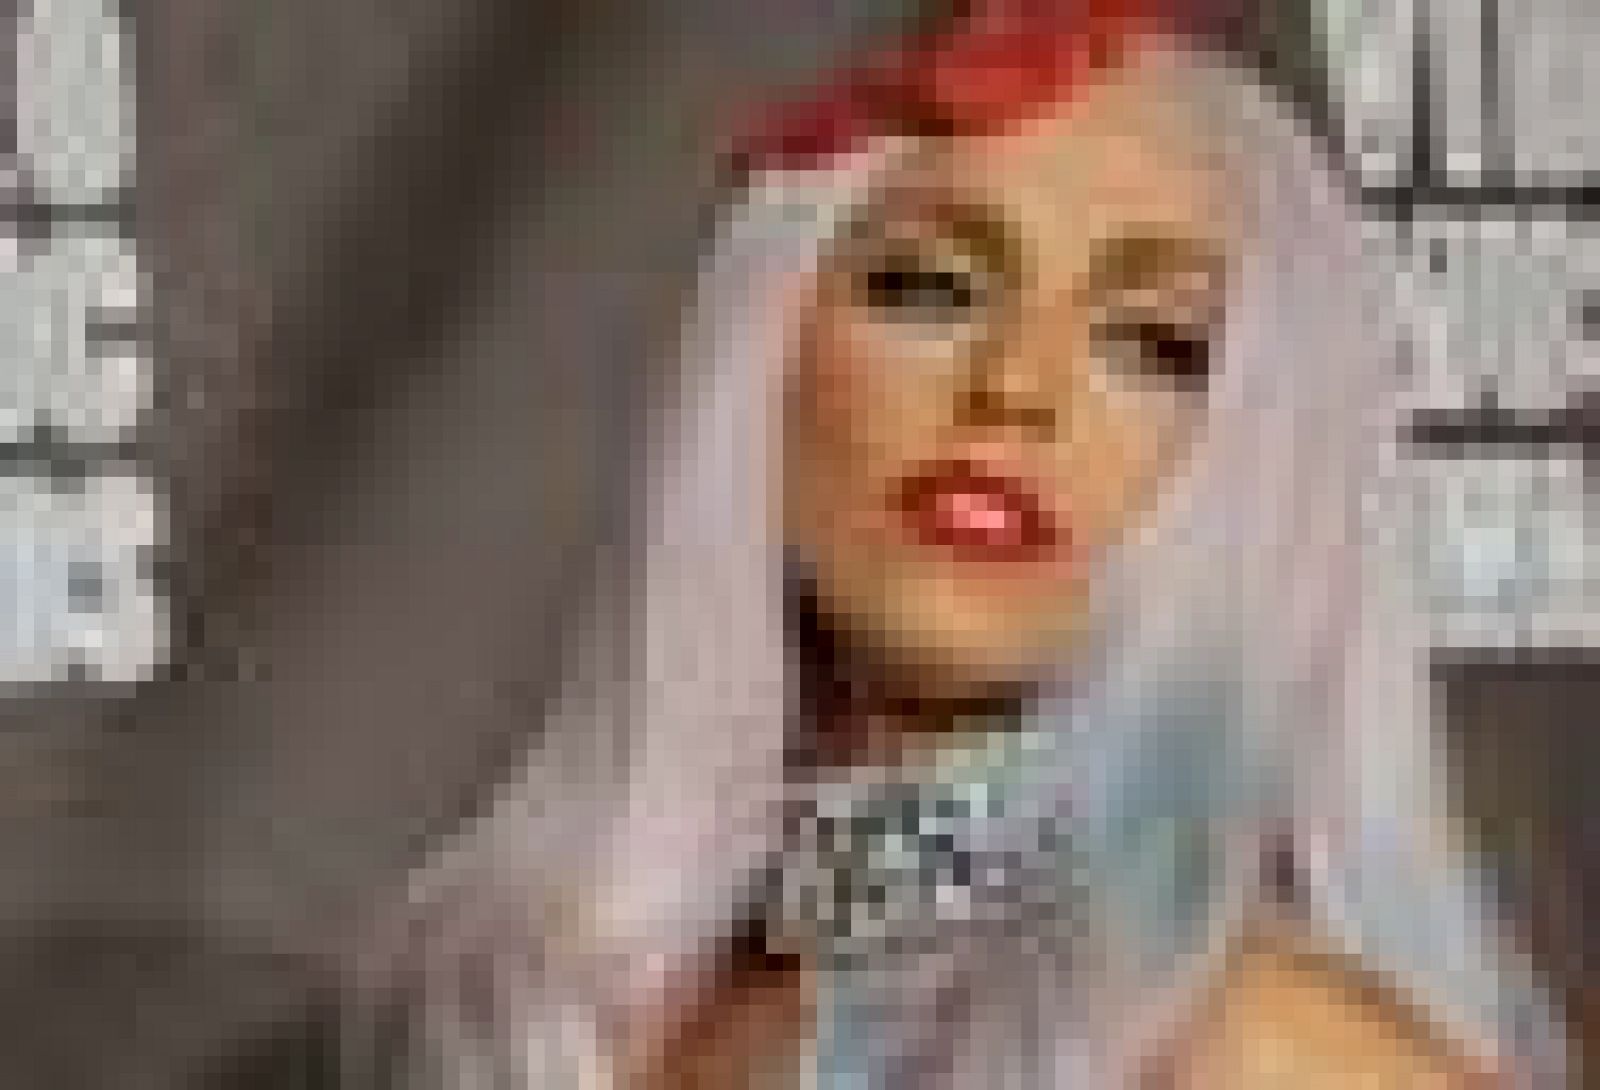  Lady Gaga hizo suyos por completo los MTV Video Music Awards, los premios de ese canal dedicados a los mejores vídeos musicales del año, y se alzó con ocho de los trece galardones a los que aspiraba, incluido el de Mejor Vídeo del año, por "Bad Romance". Otras de las estatuillas que se llevó en la gala, organizada en el teatro Nokia de Los Ángeles (California), fueron las de Mejor Vídeo Pop, Mejor Vídeo de una artista femenina, Mejor Vídeo Dance (todas ellas por "Bad Romance") y Mejor Colaboración, este último por "Telephone", con Beyoncé.